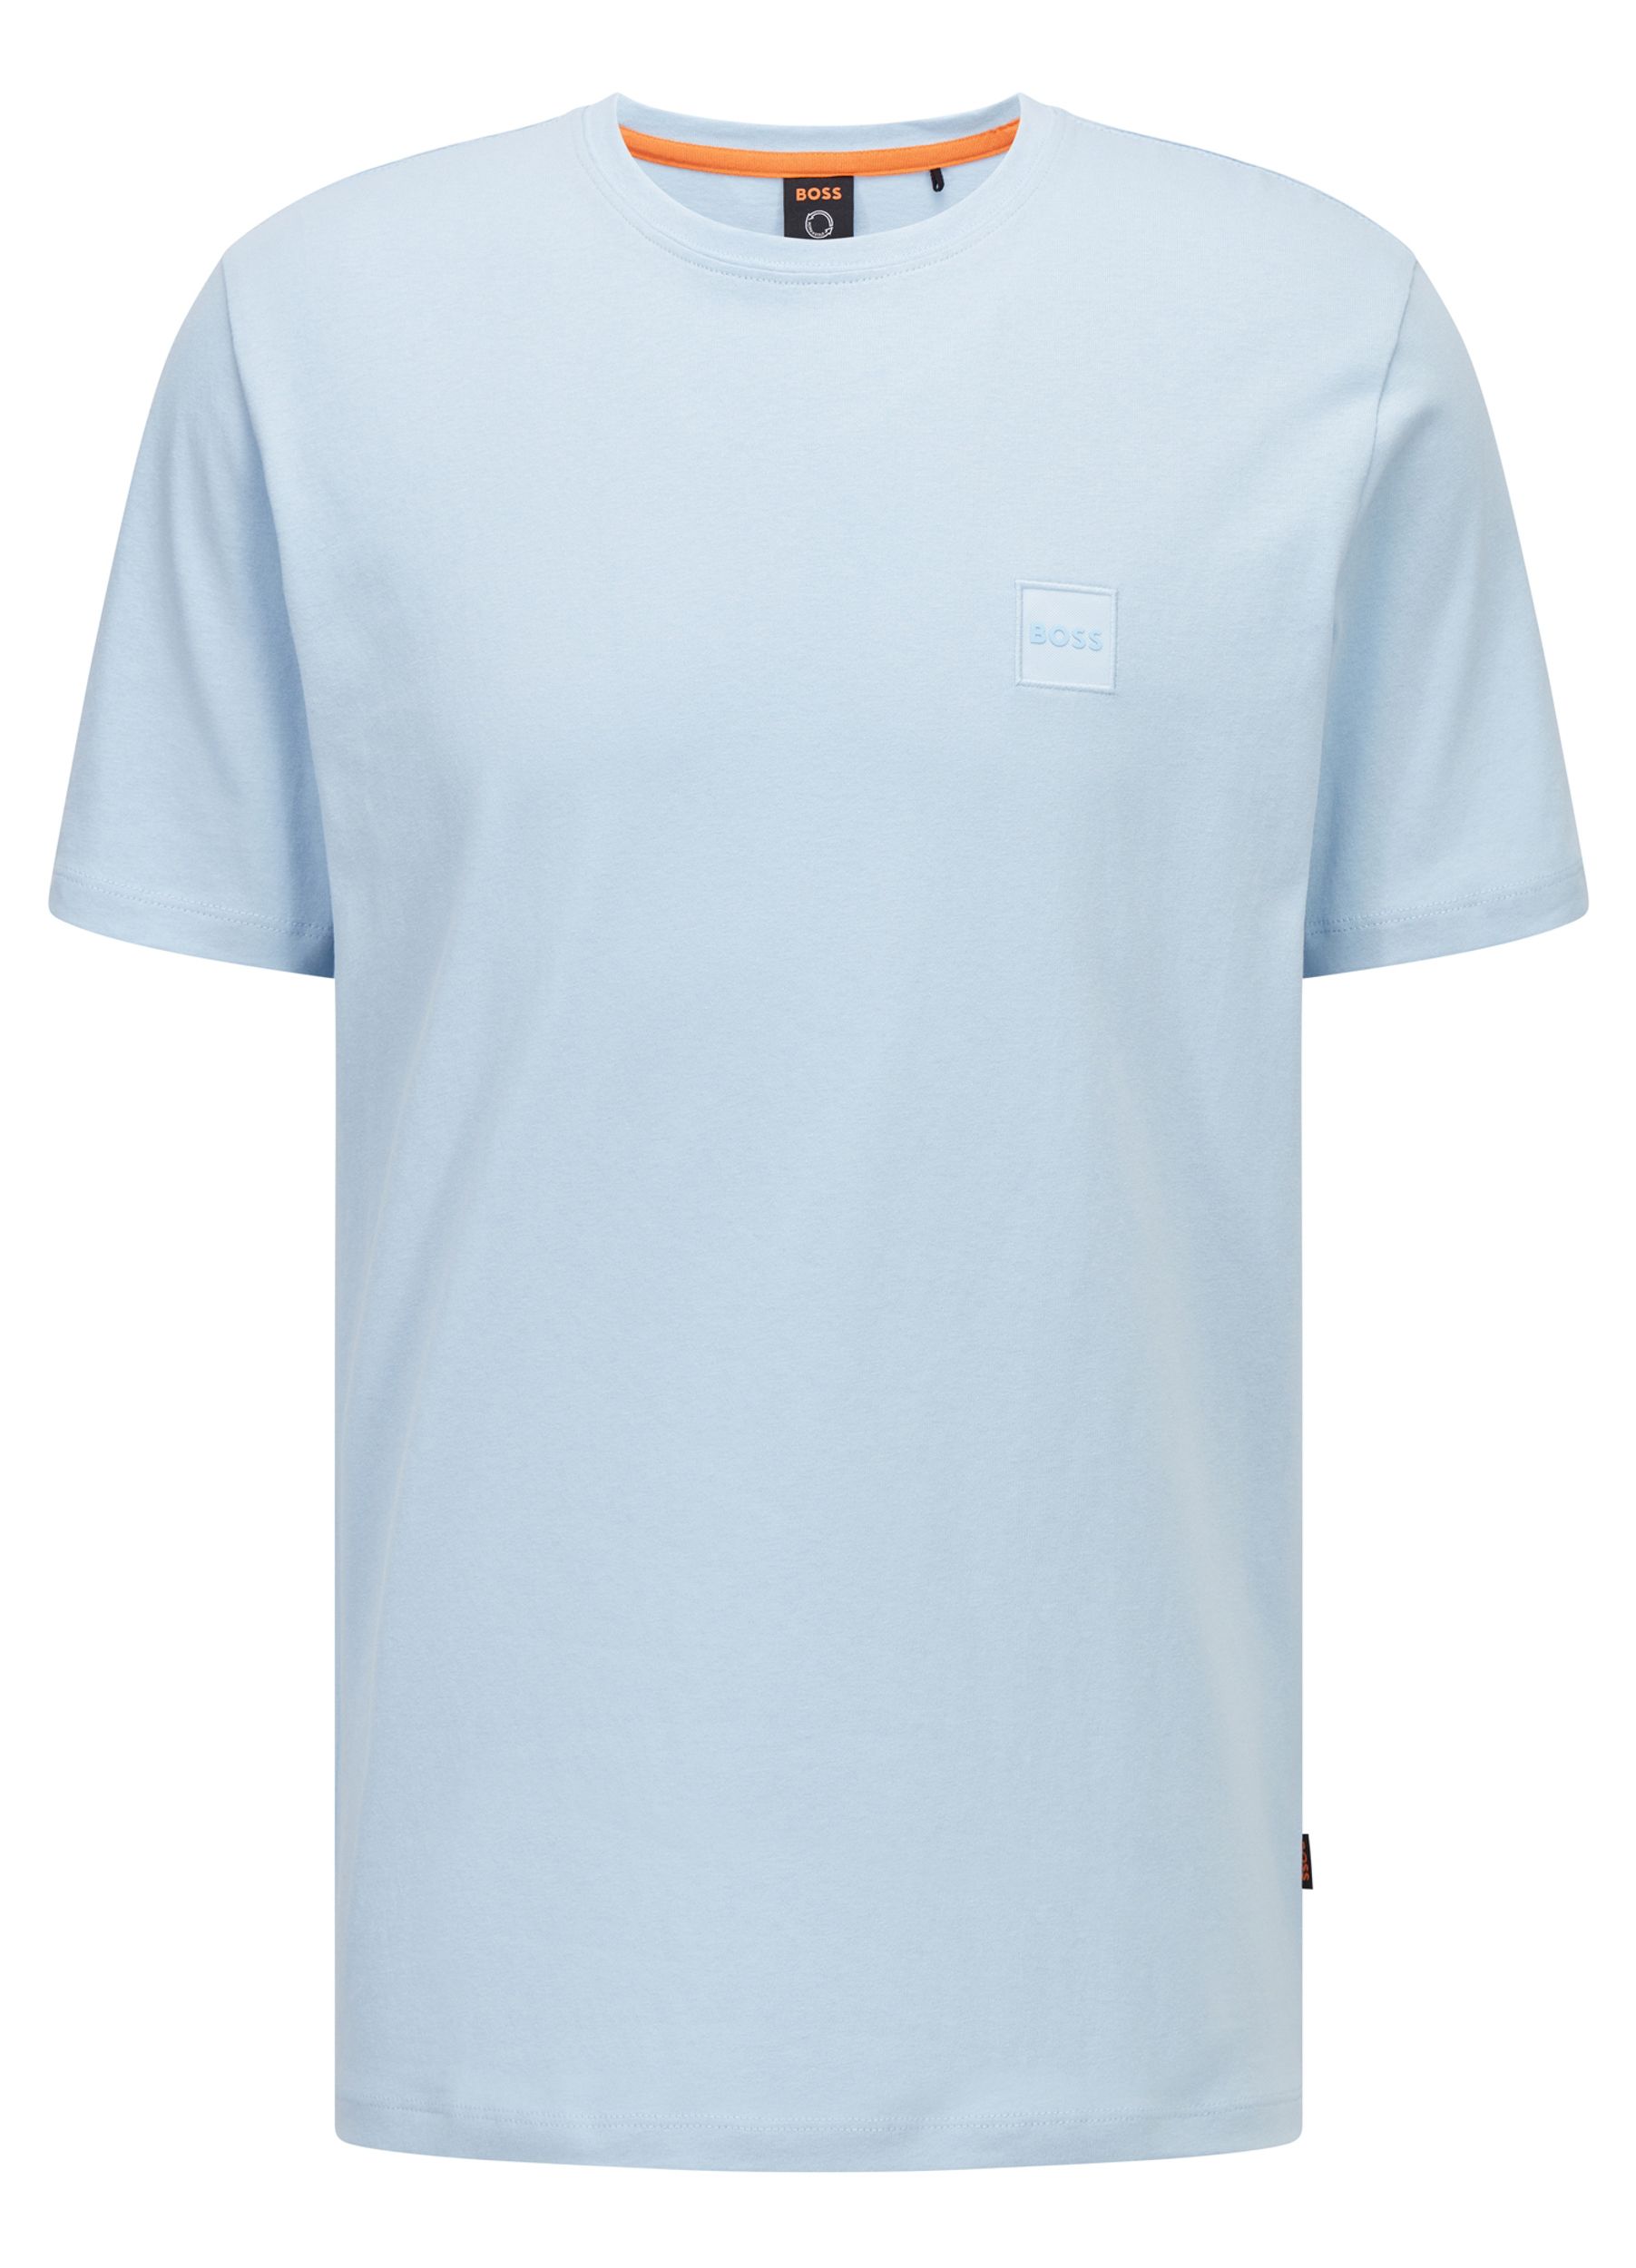 Hugo Boss Casual Tales T-shirt KM Blauw 074079-001-L